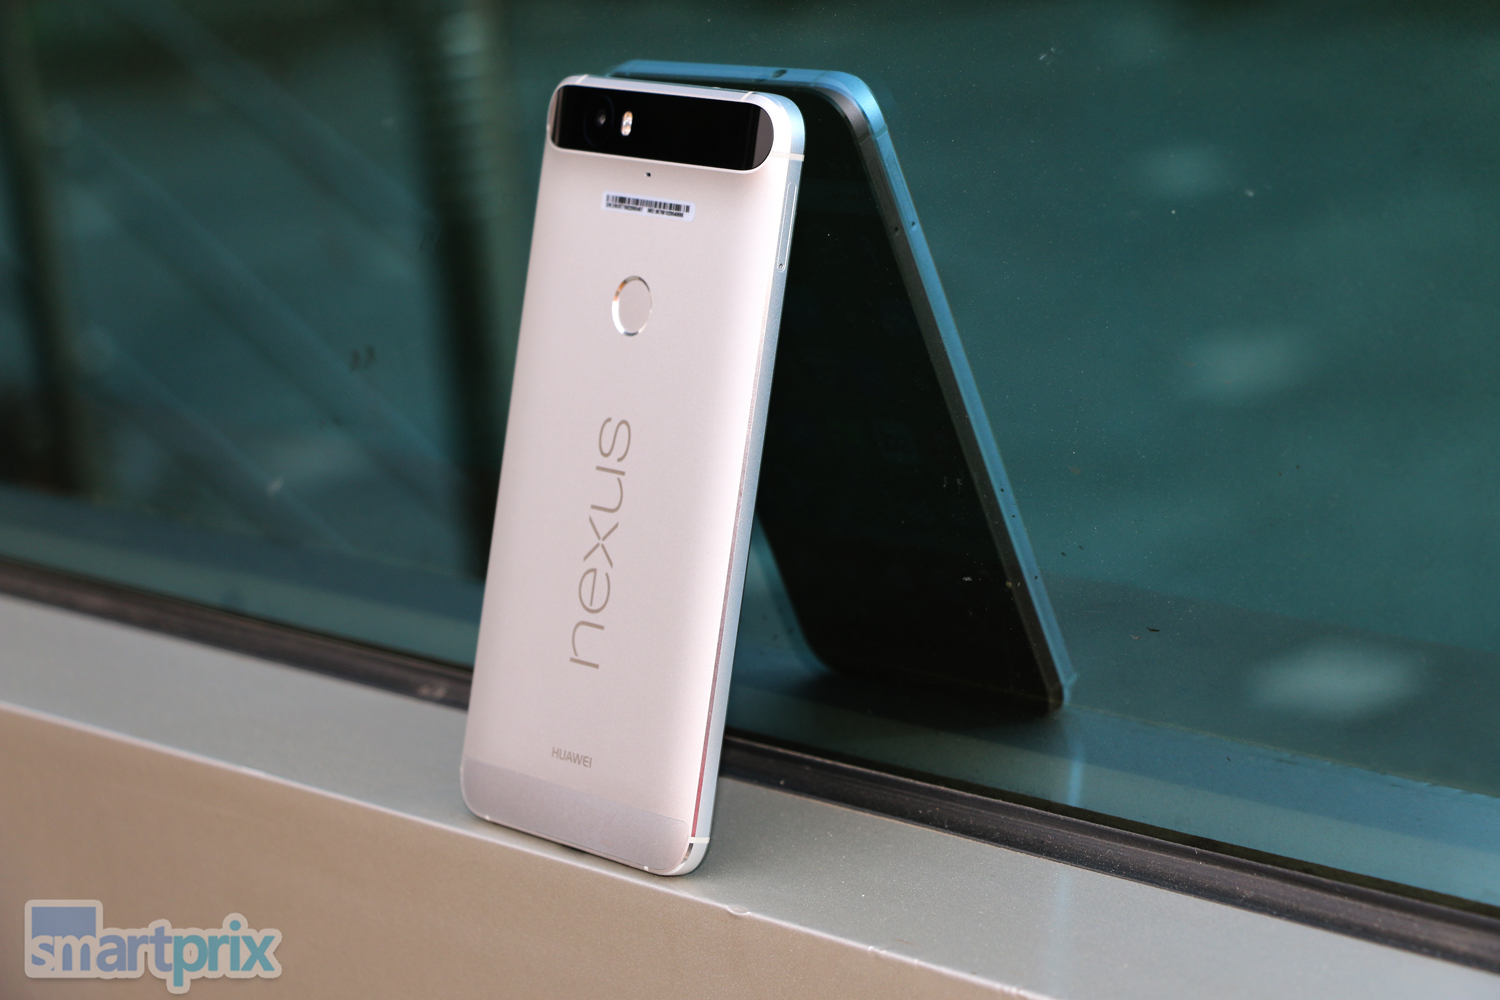 Respuestas a todas las preguntas frecuentes de Google Nexus 6P: puntuaciones comparativas, consultas de los usuarios y galería de fotos